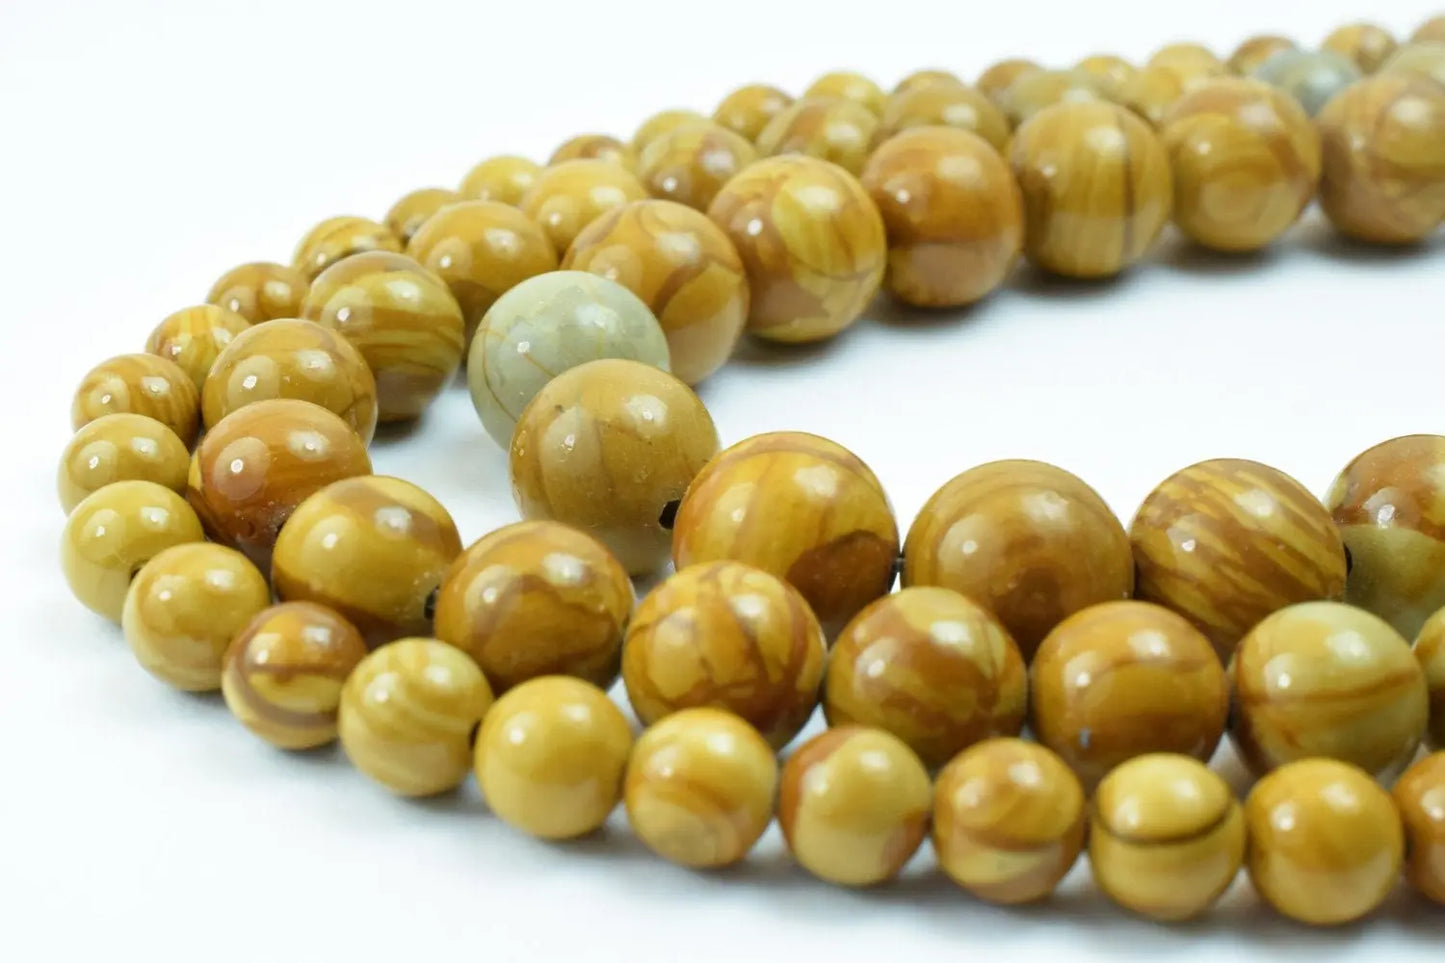 Yellow Tiger Skin Beads Wooden Jasper Gemstone Round Beads 6mm/8mm/10mm Natural Stones Beads natural healing stone chakra stones - BeadsFindingDepot